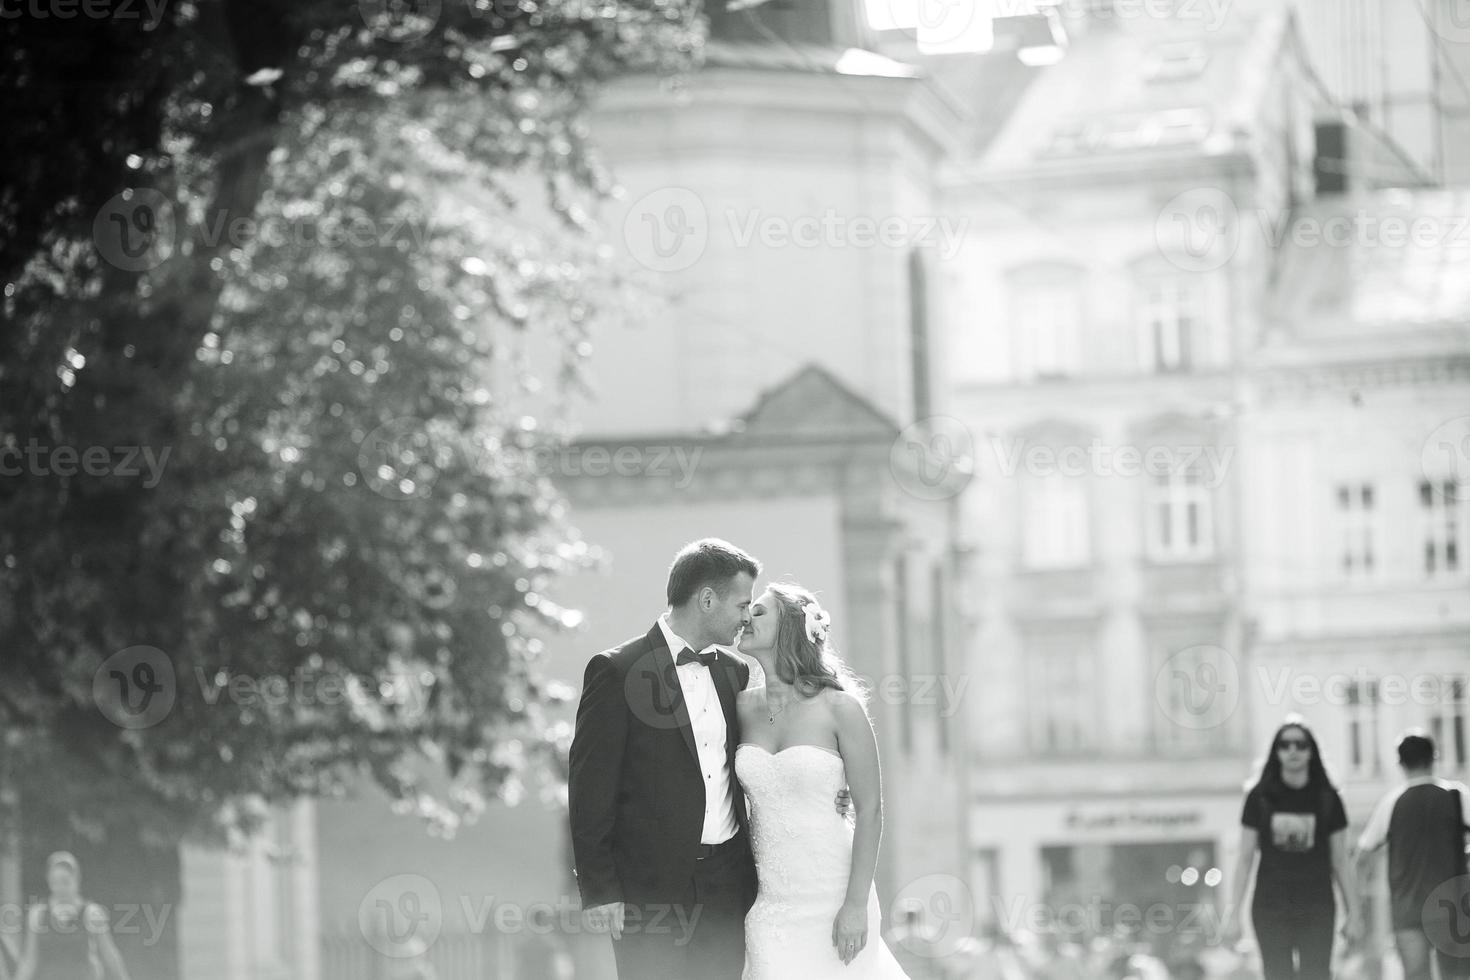 hermosa pareja caminando por la ciudad europea foto